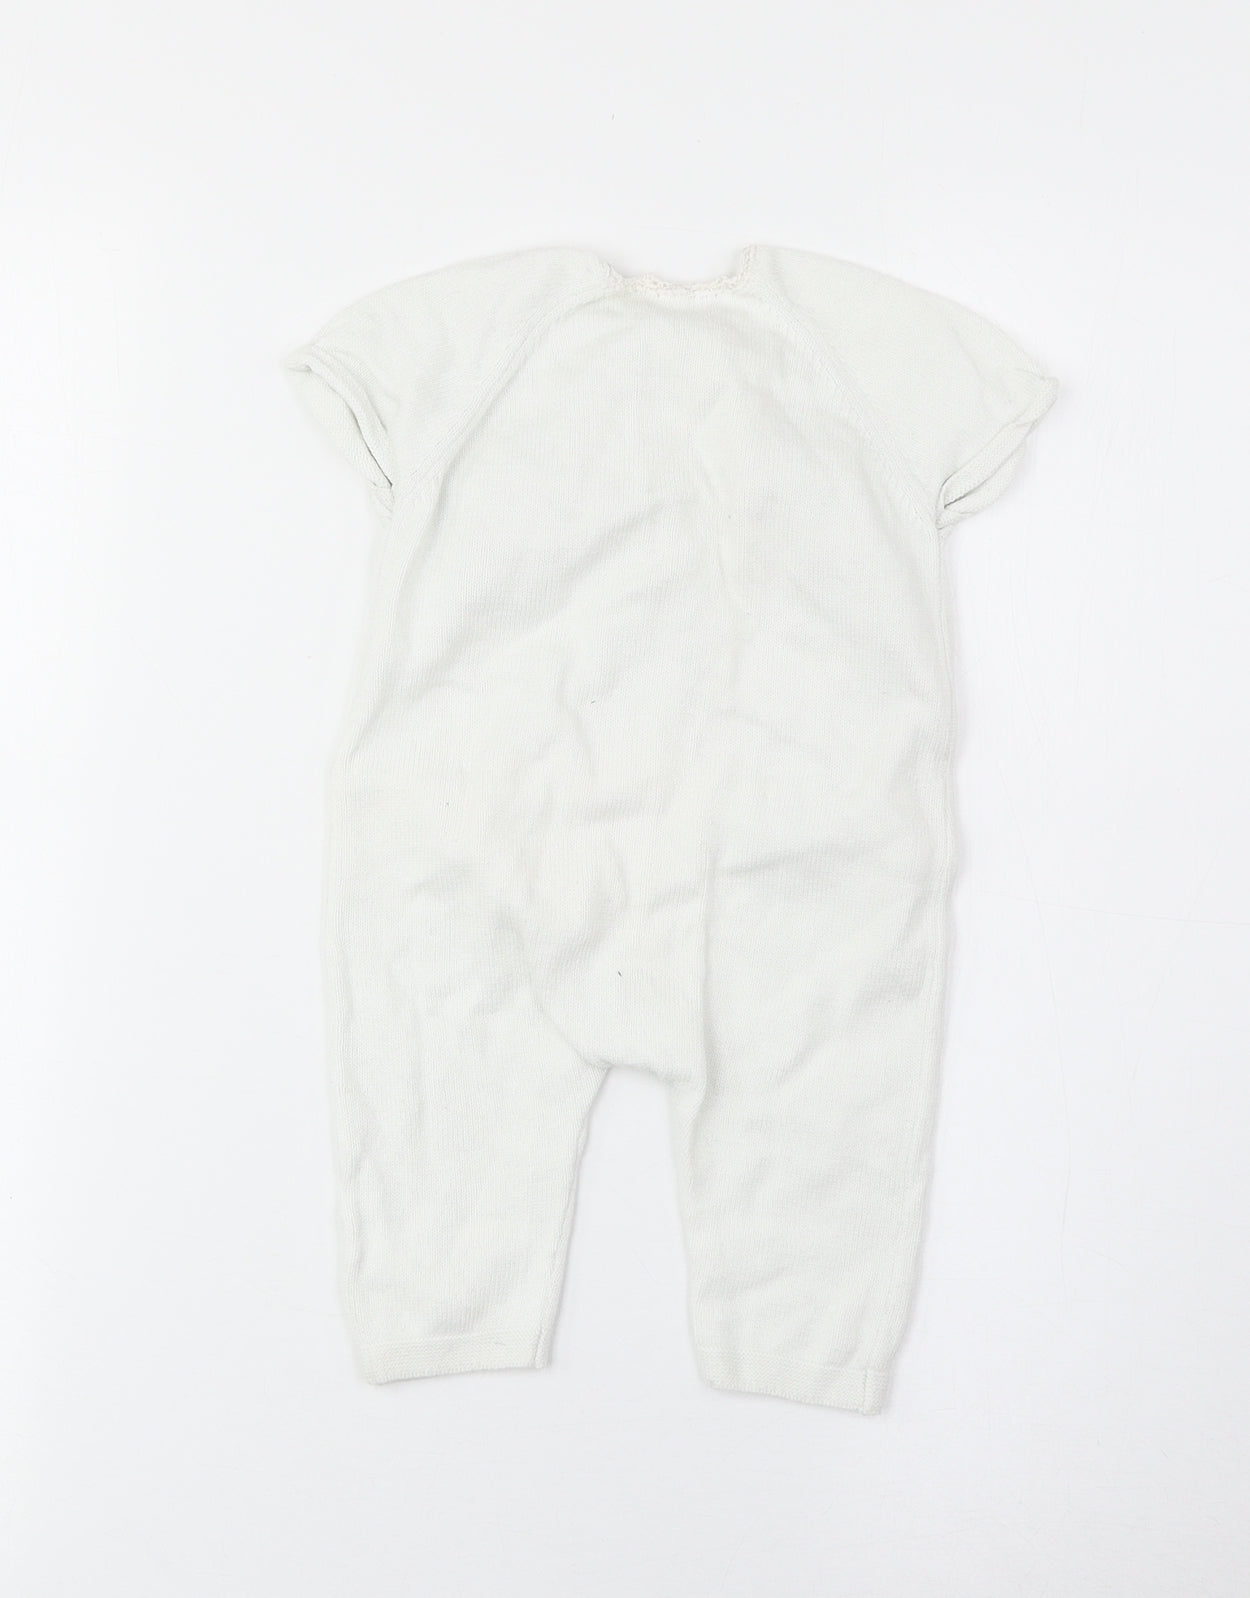 TU Girls White Cotton Babygrow One-Piece Size 3-6 Months Button - Floral Detail